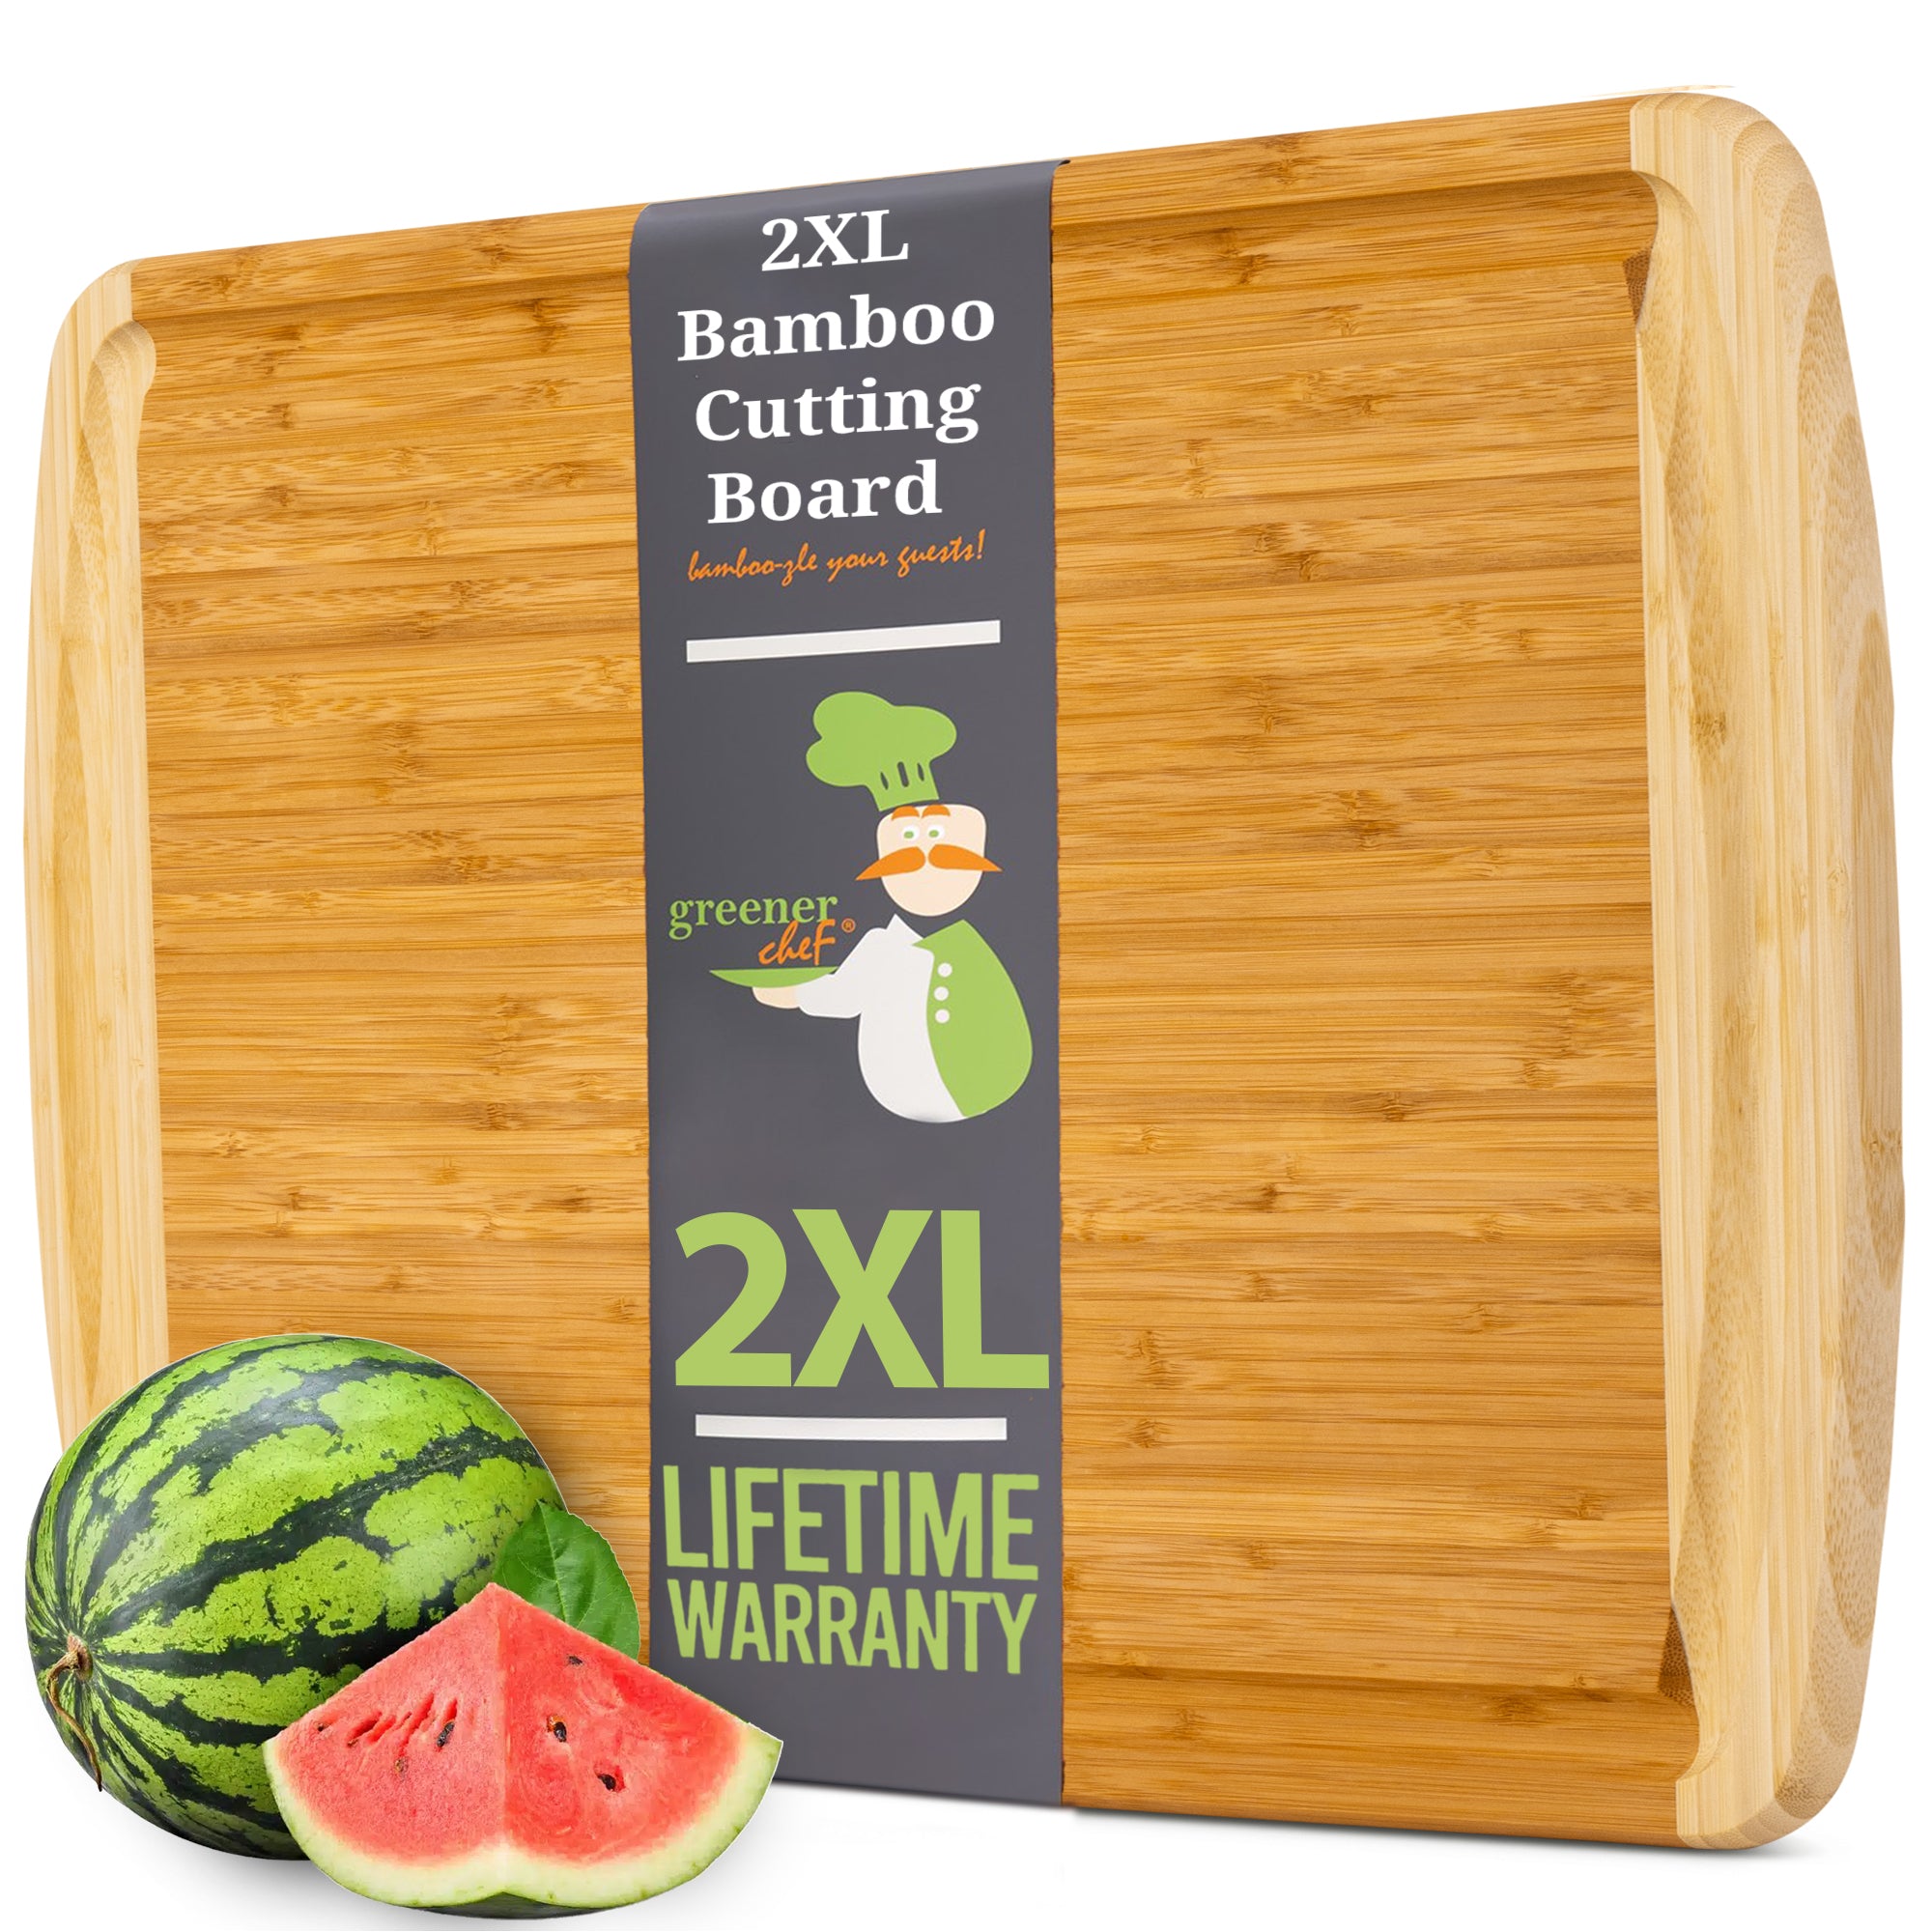 CBGH-1218 Winco Green 12 x 18 X 3/4 Veggie & Fruit Cutting Board